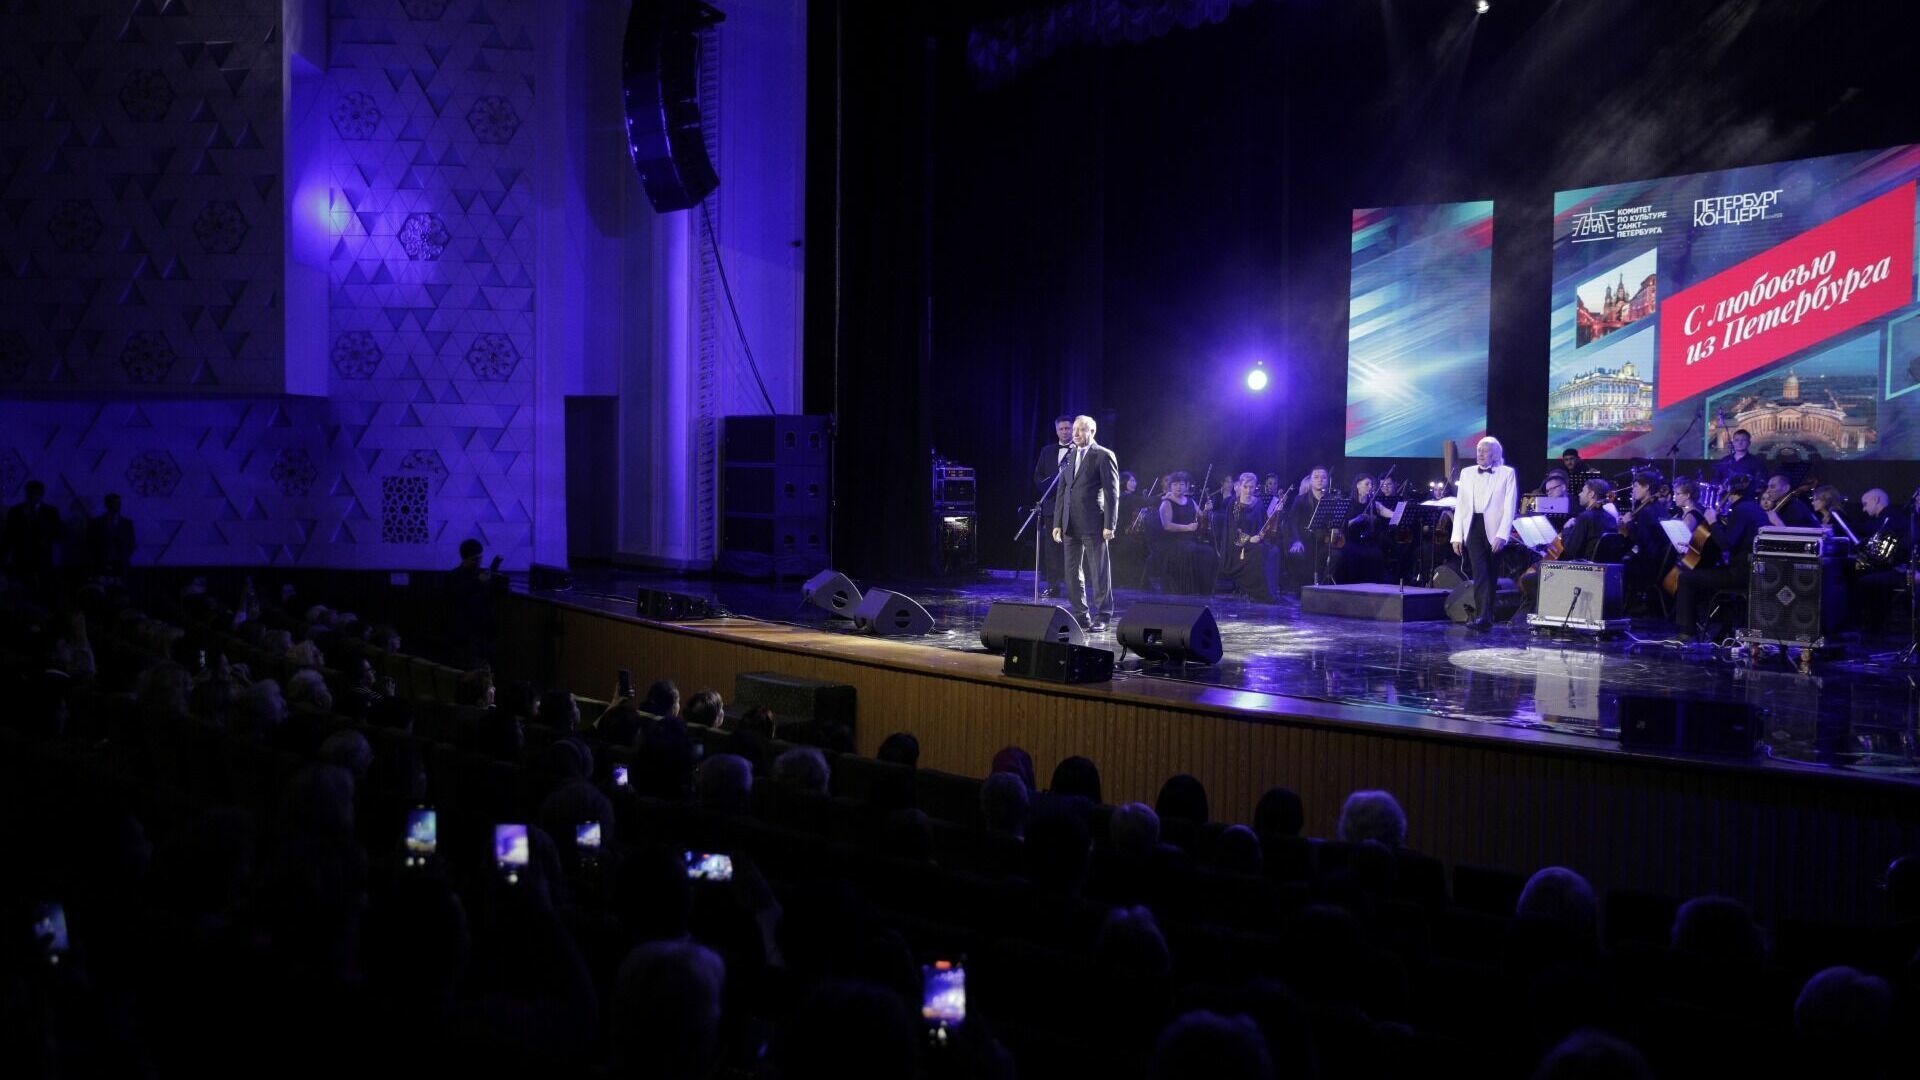 Беглов провел концерт в Узбекистане за 11 млн рублей вместо помощи Донбассу